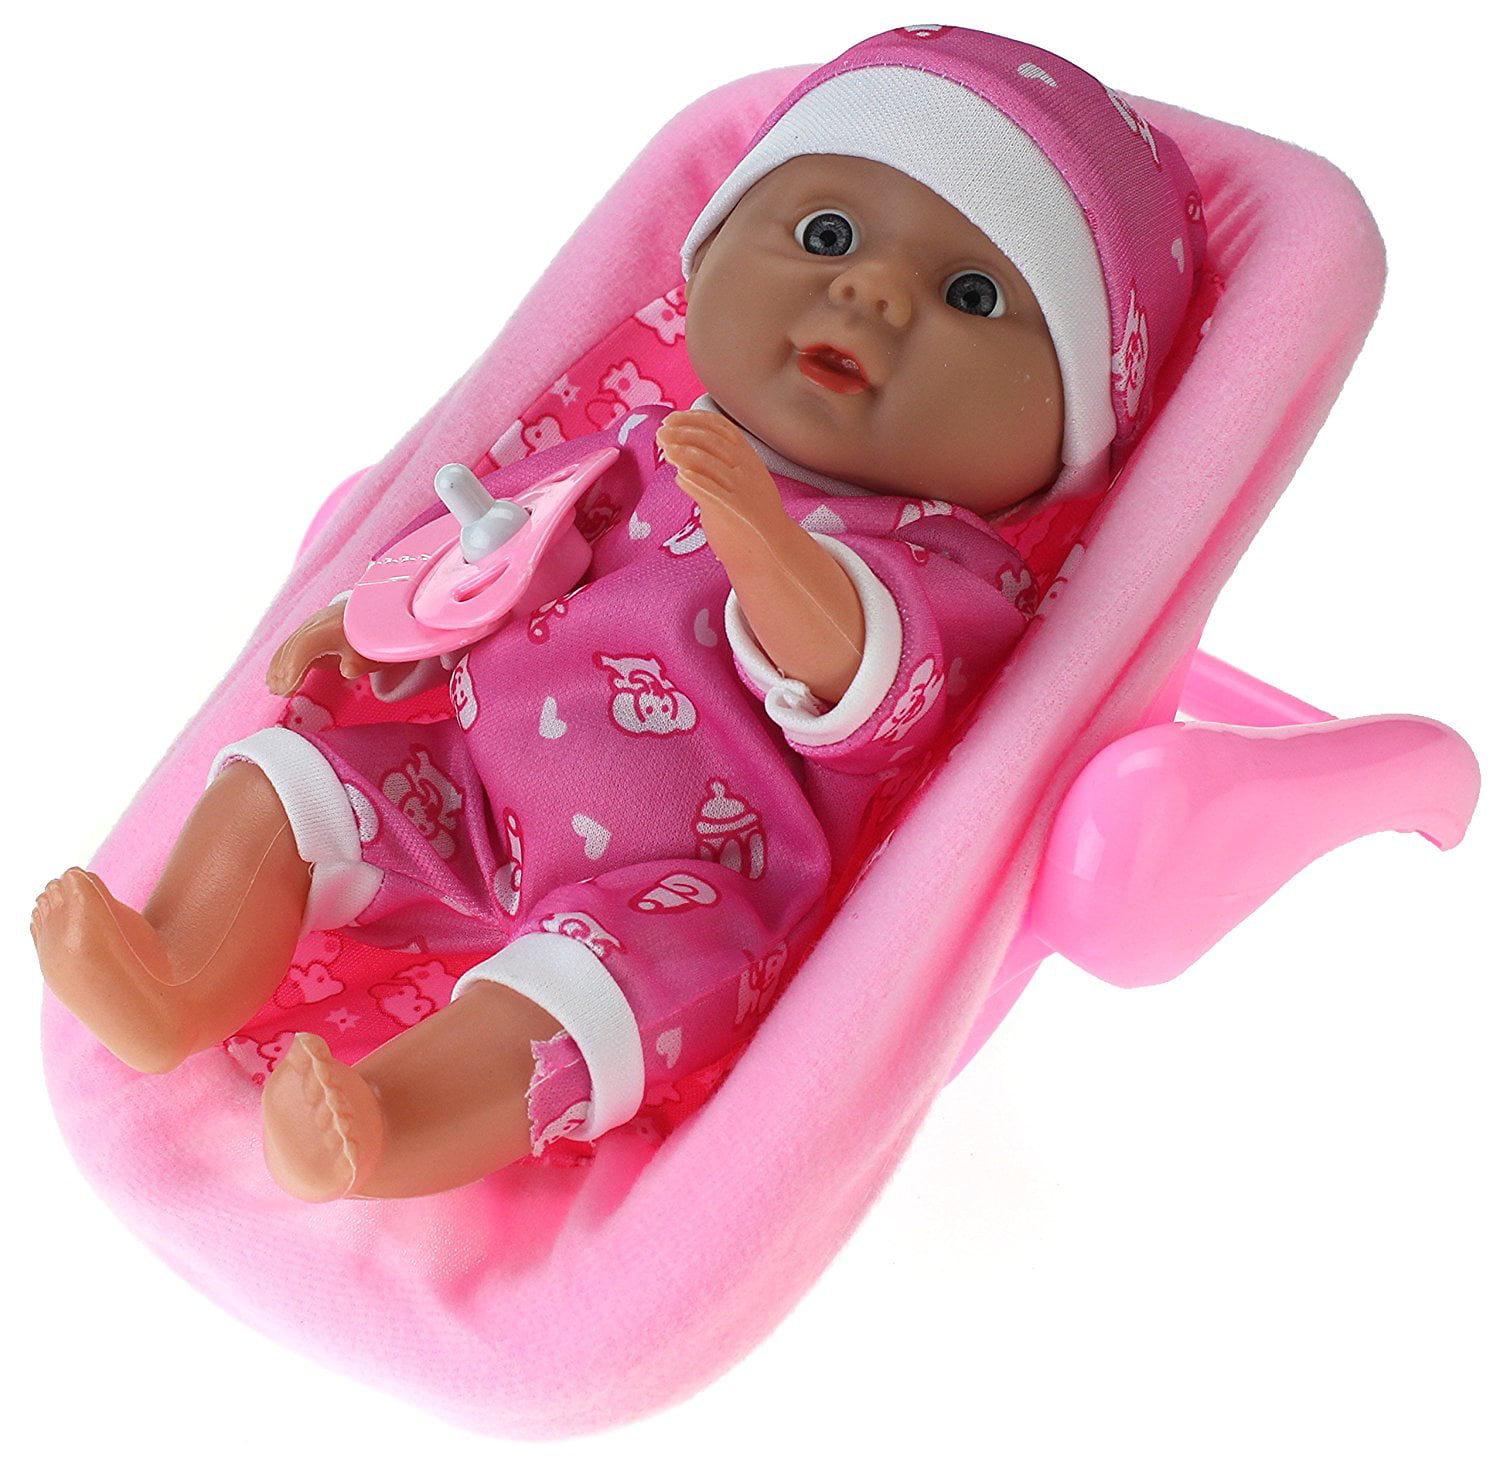 My Little Baby Realistic Baby Toy Doll In Rocker w/ Pacifier & Rocker ...